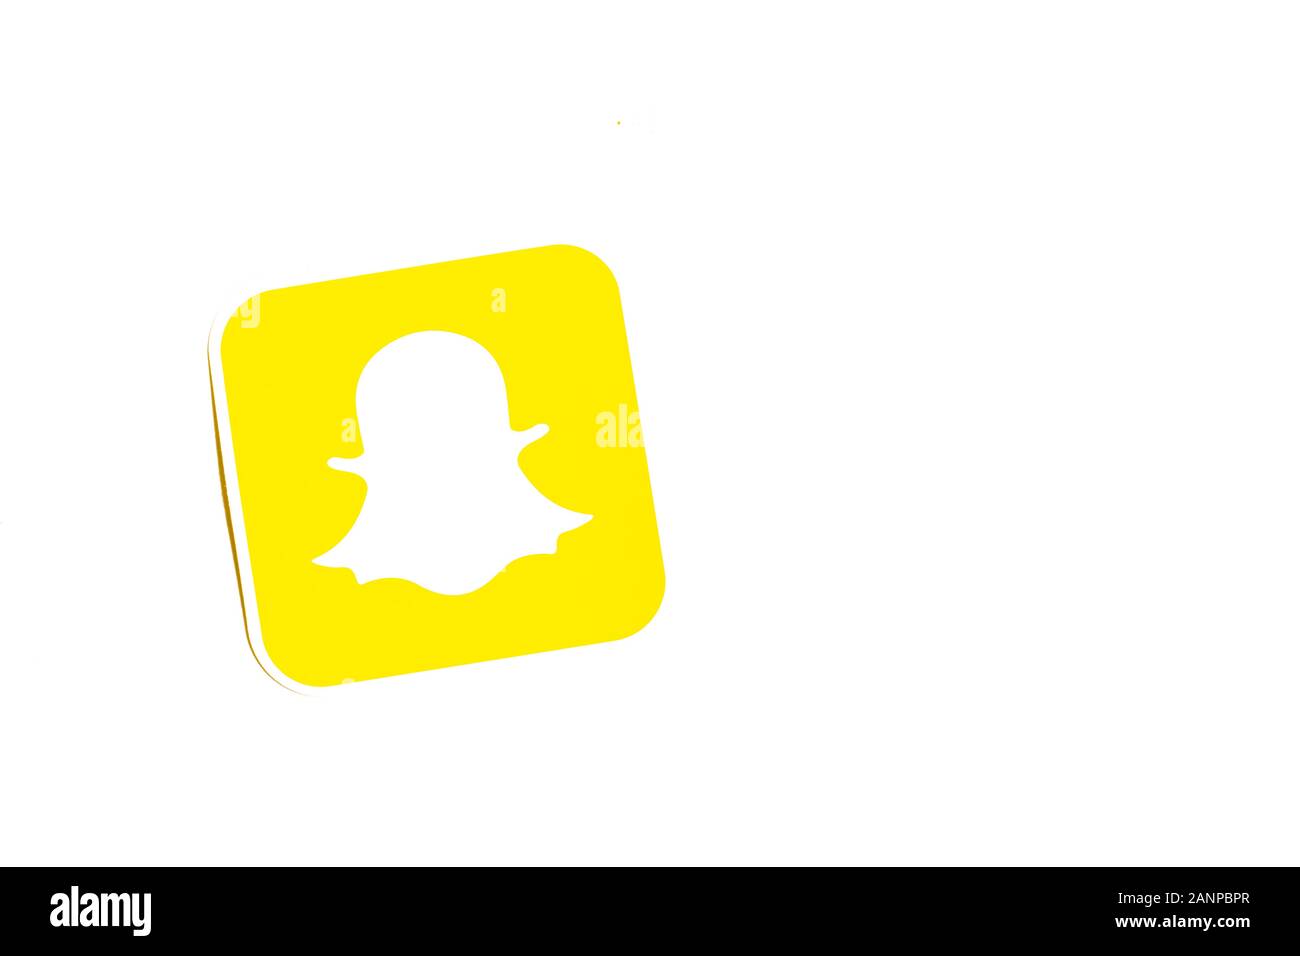 Los Angeles, Californie, États-Unis - 17 janvier 2020: Logo Snapchat sur fond blanc avec espace de copie. Icône des médias sociaux, éditorial illustratif Banque D'Images